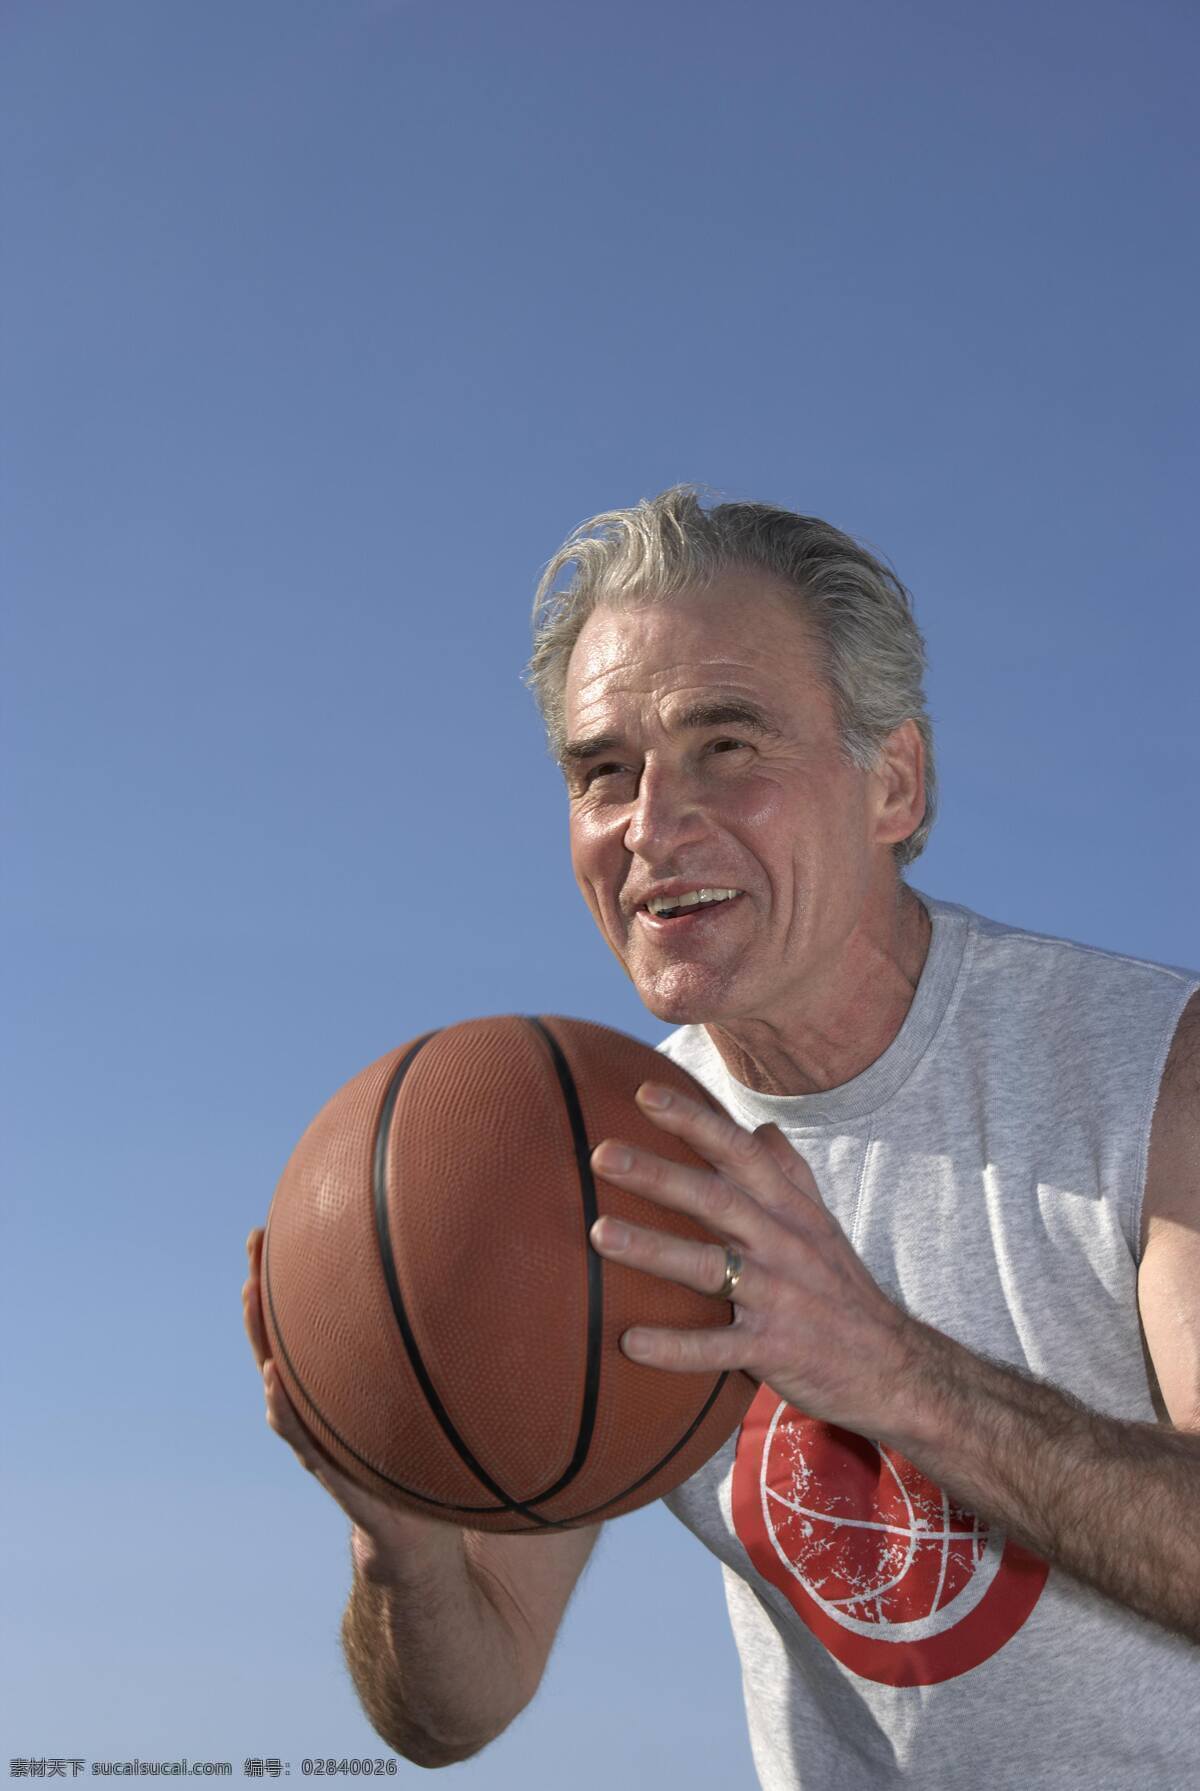 篮球 老人 设计素材 高清jpg 意气风发 运动的老人 健康 硬朗的老人 微笑的老人 老人的生活 打篮球的老人 天空 老人图片 人物图片